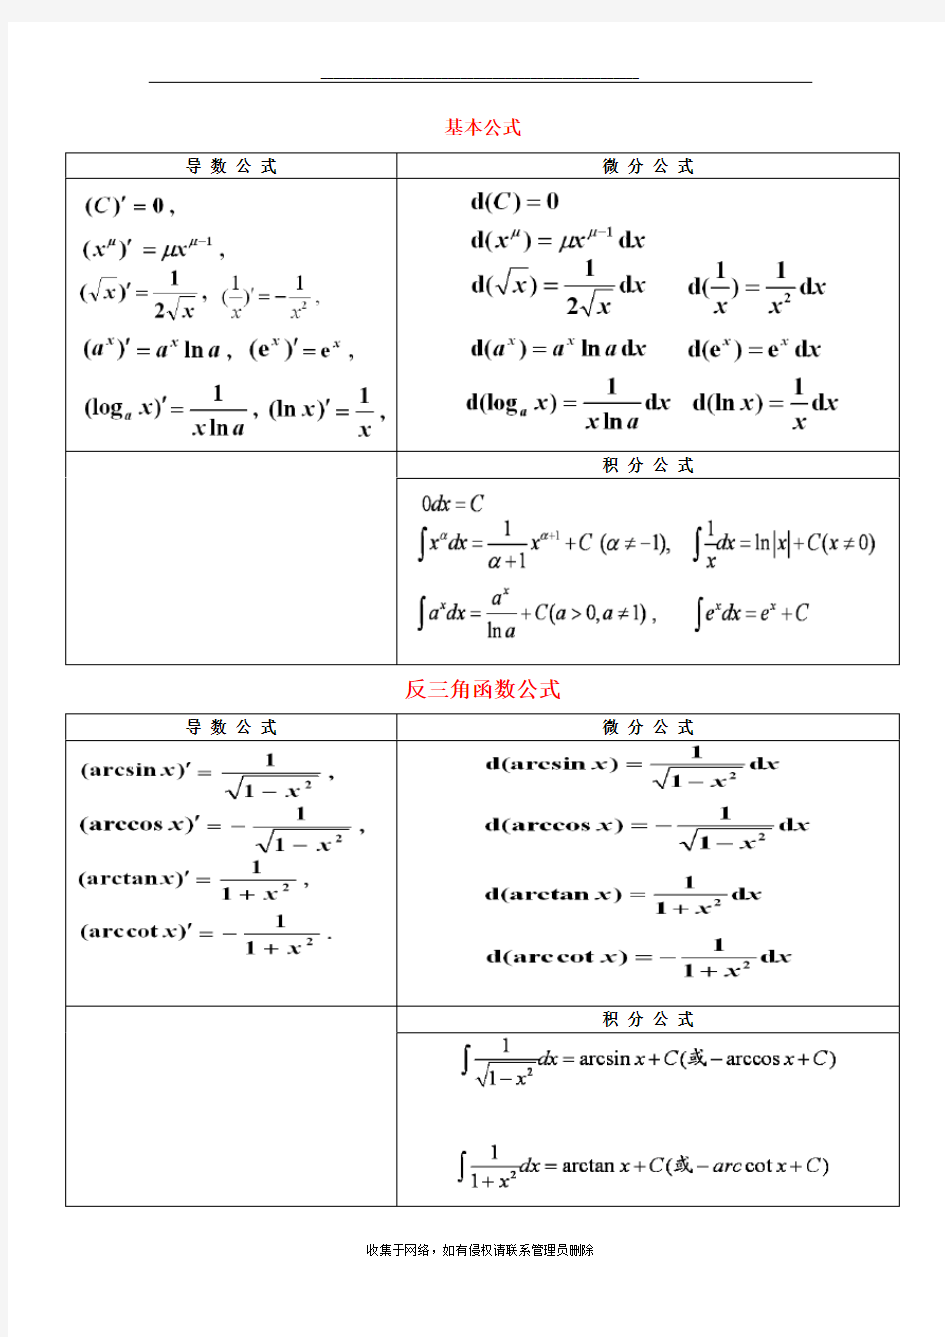 最新导数公式、微分公式和积分公式